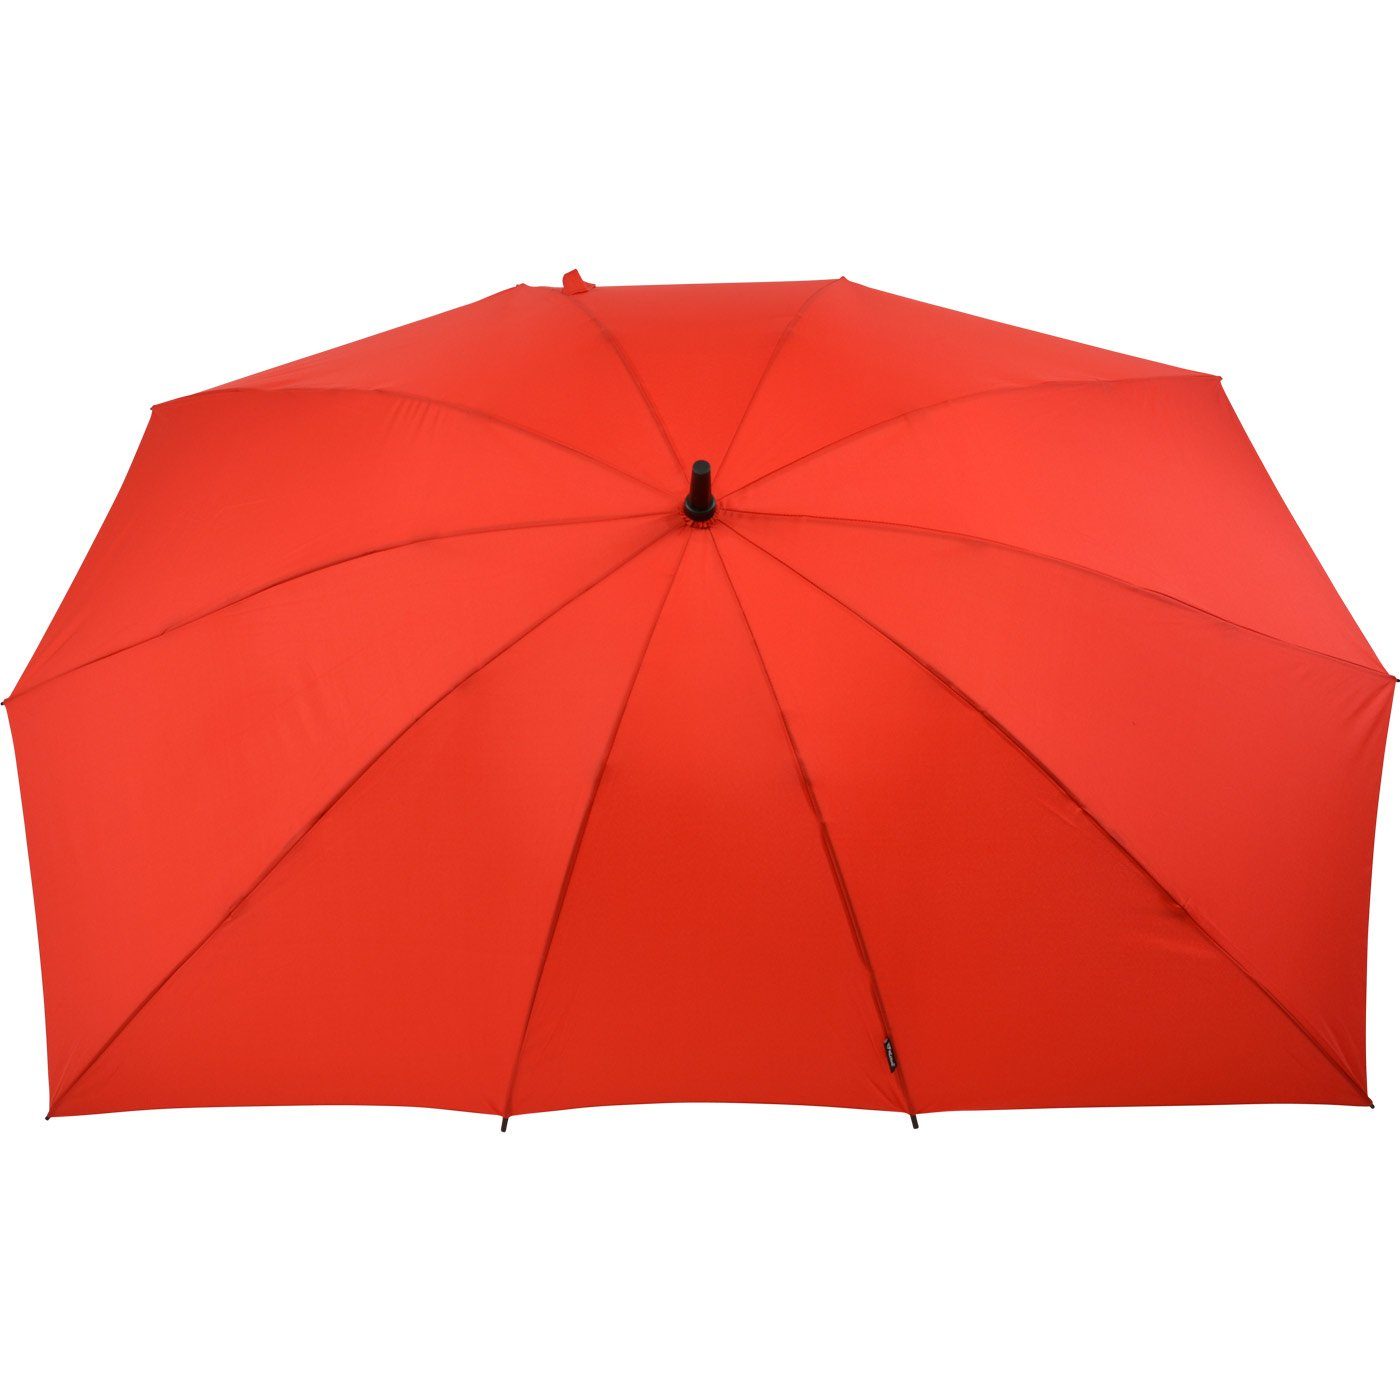 Impliva Langregenschirm Falcone® XXL rechteckiger außergewöhnlich rot zwei, für Regenschirm